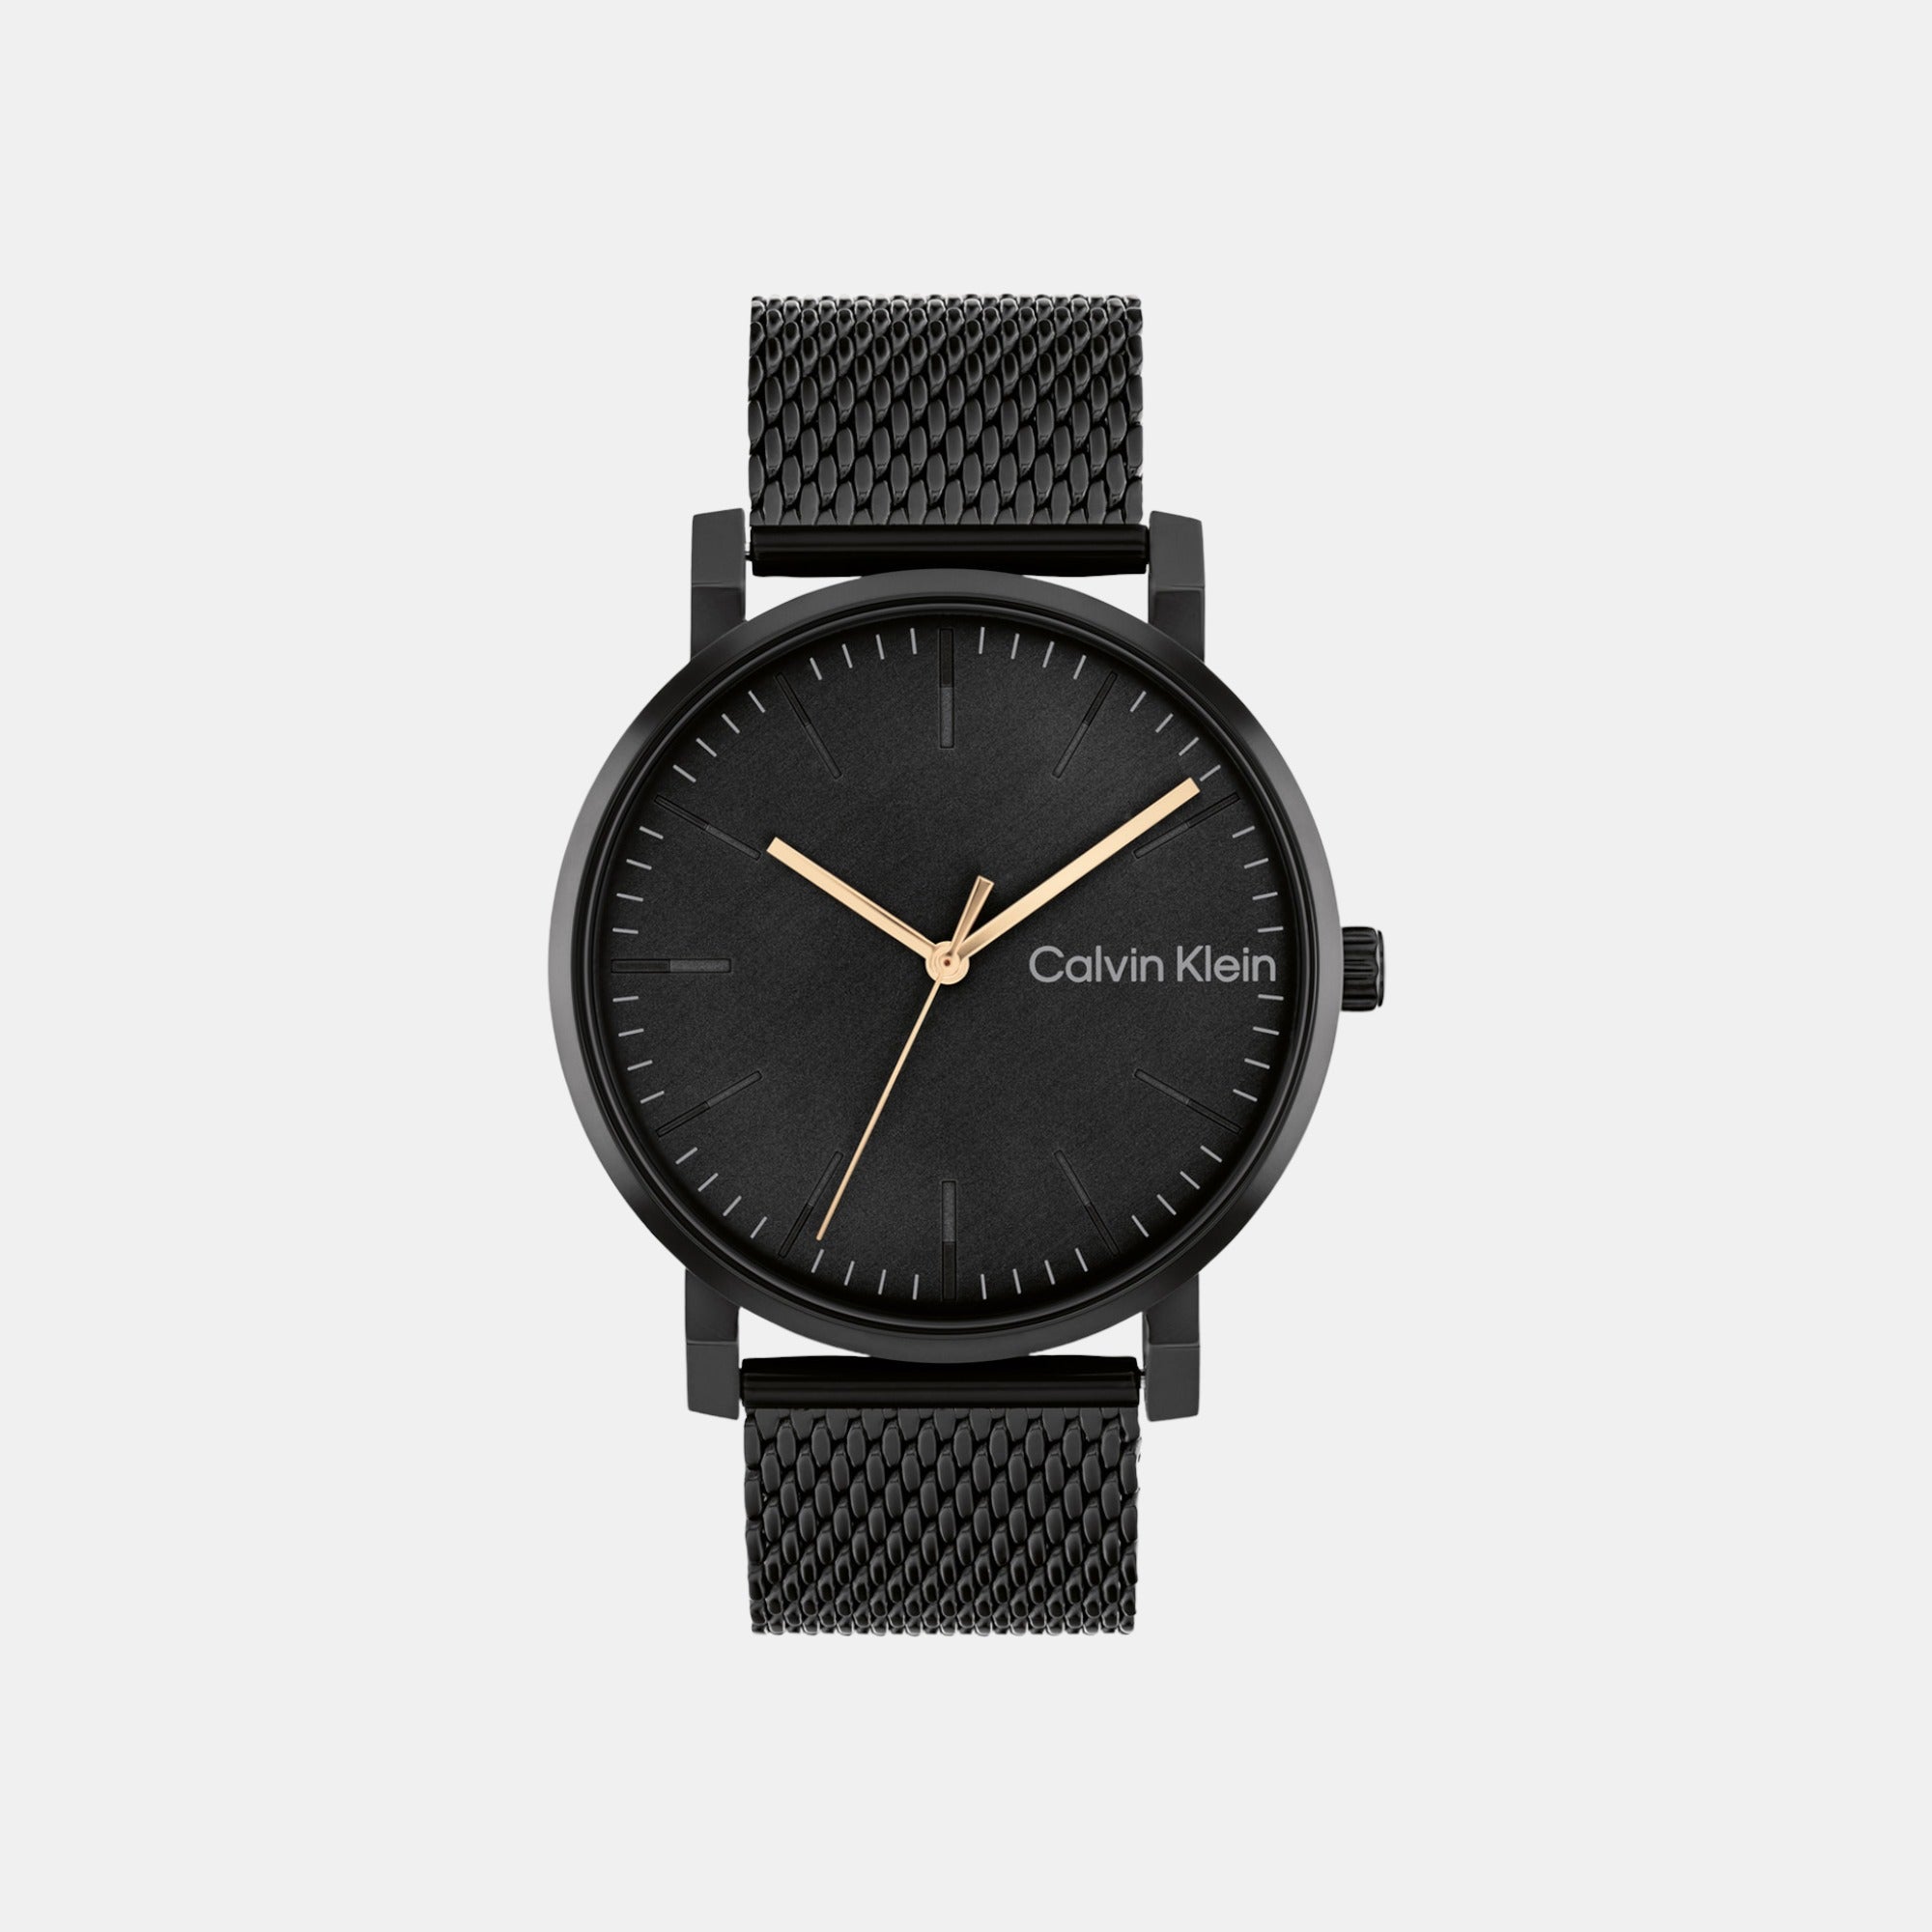 Calvin Klein Watch Straps online shop - Watch Plaza - Watch Plaza